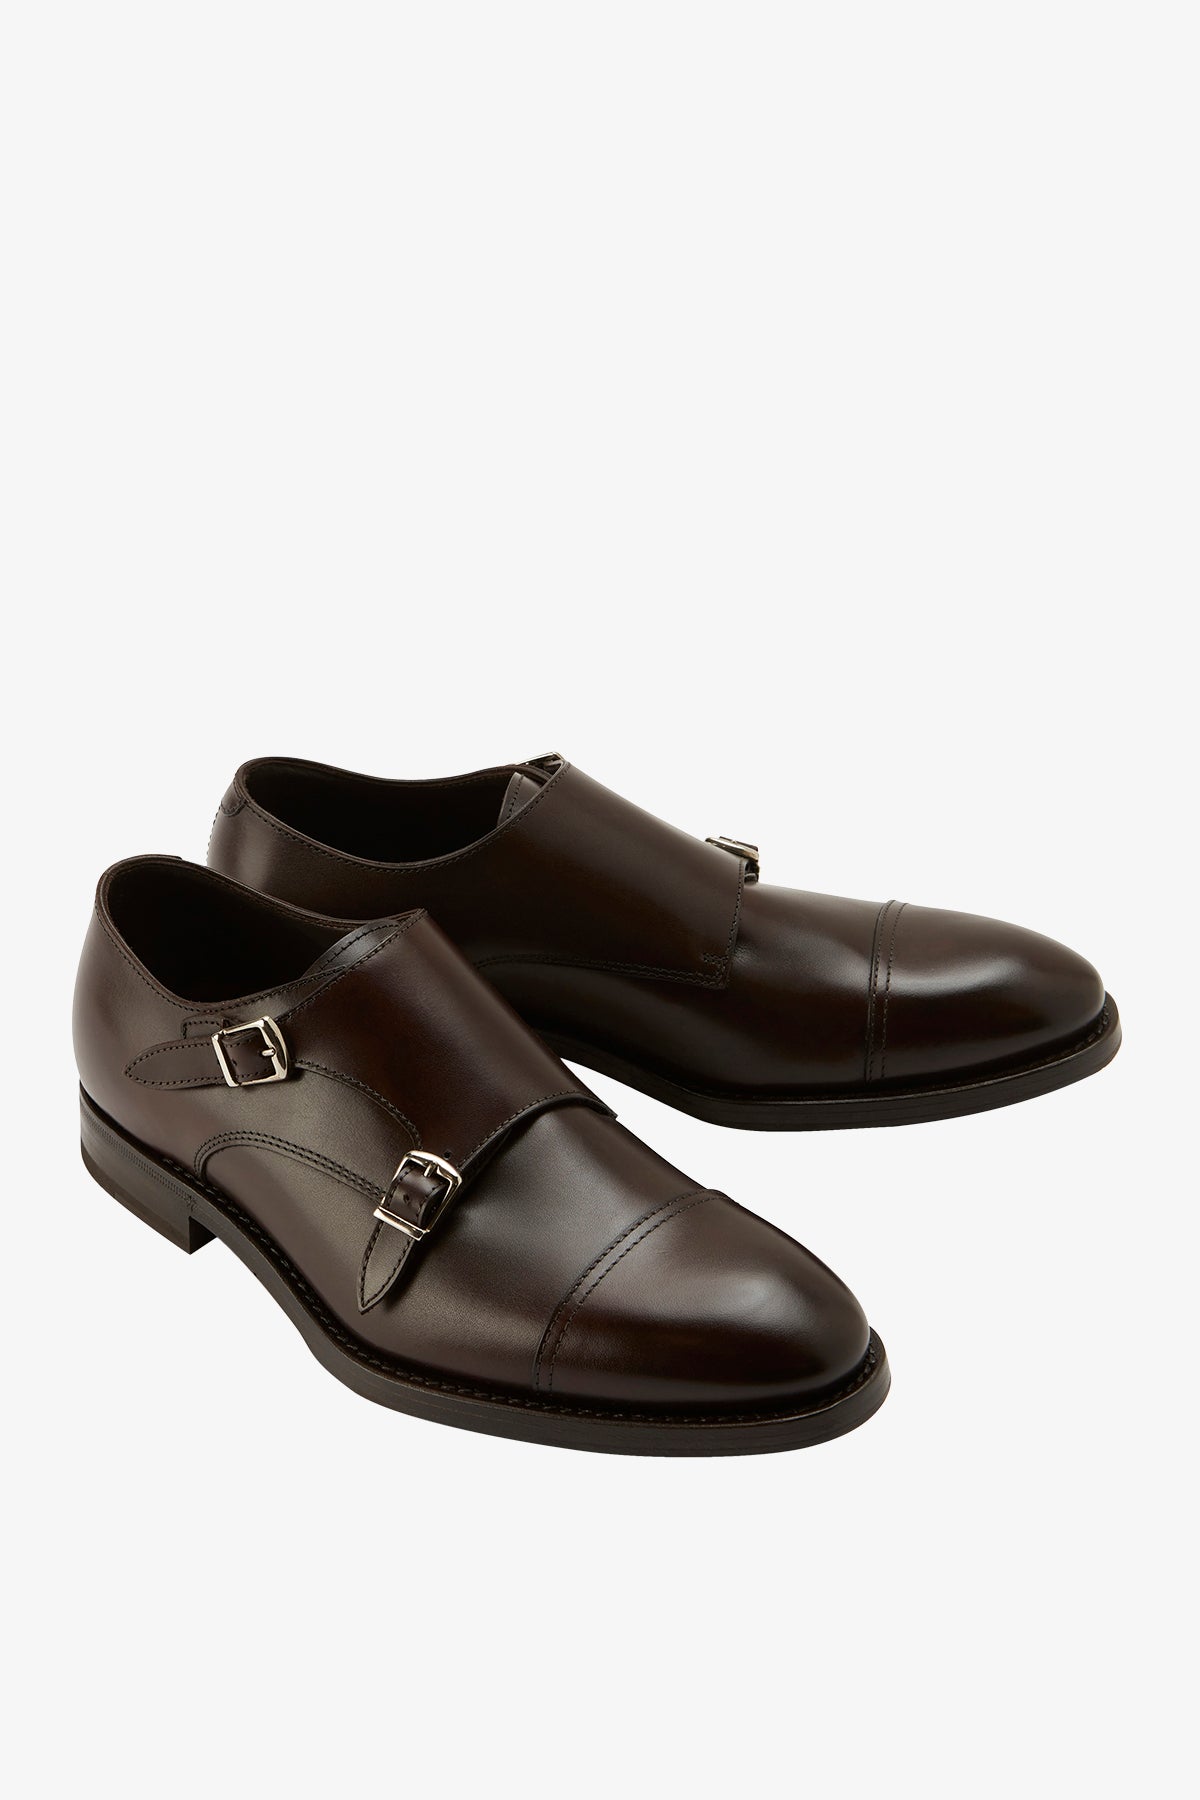 Double Monk - Dark Brown Shoe